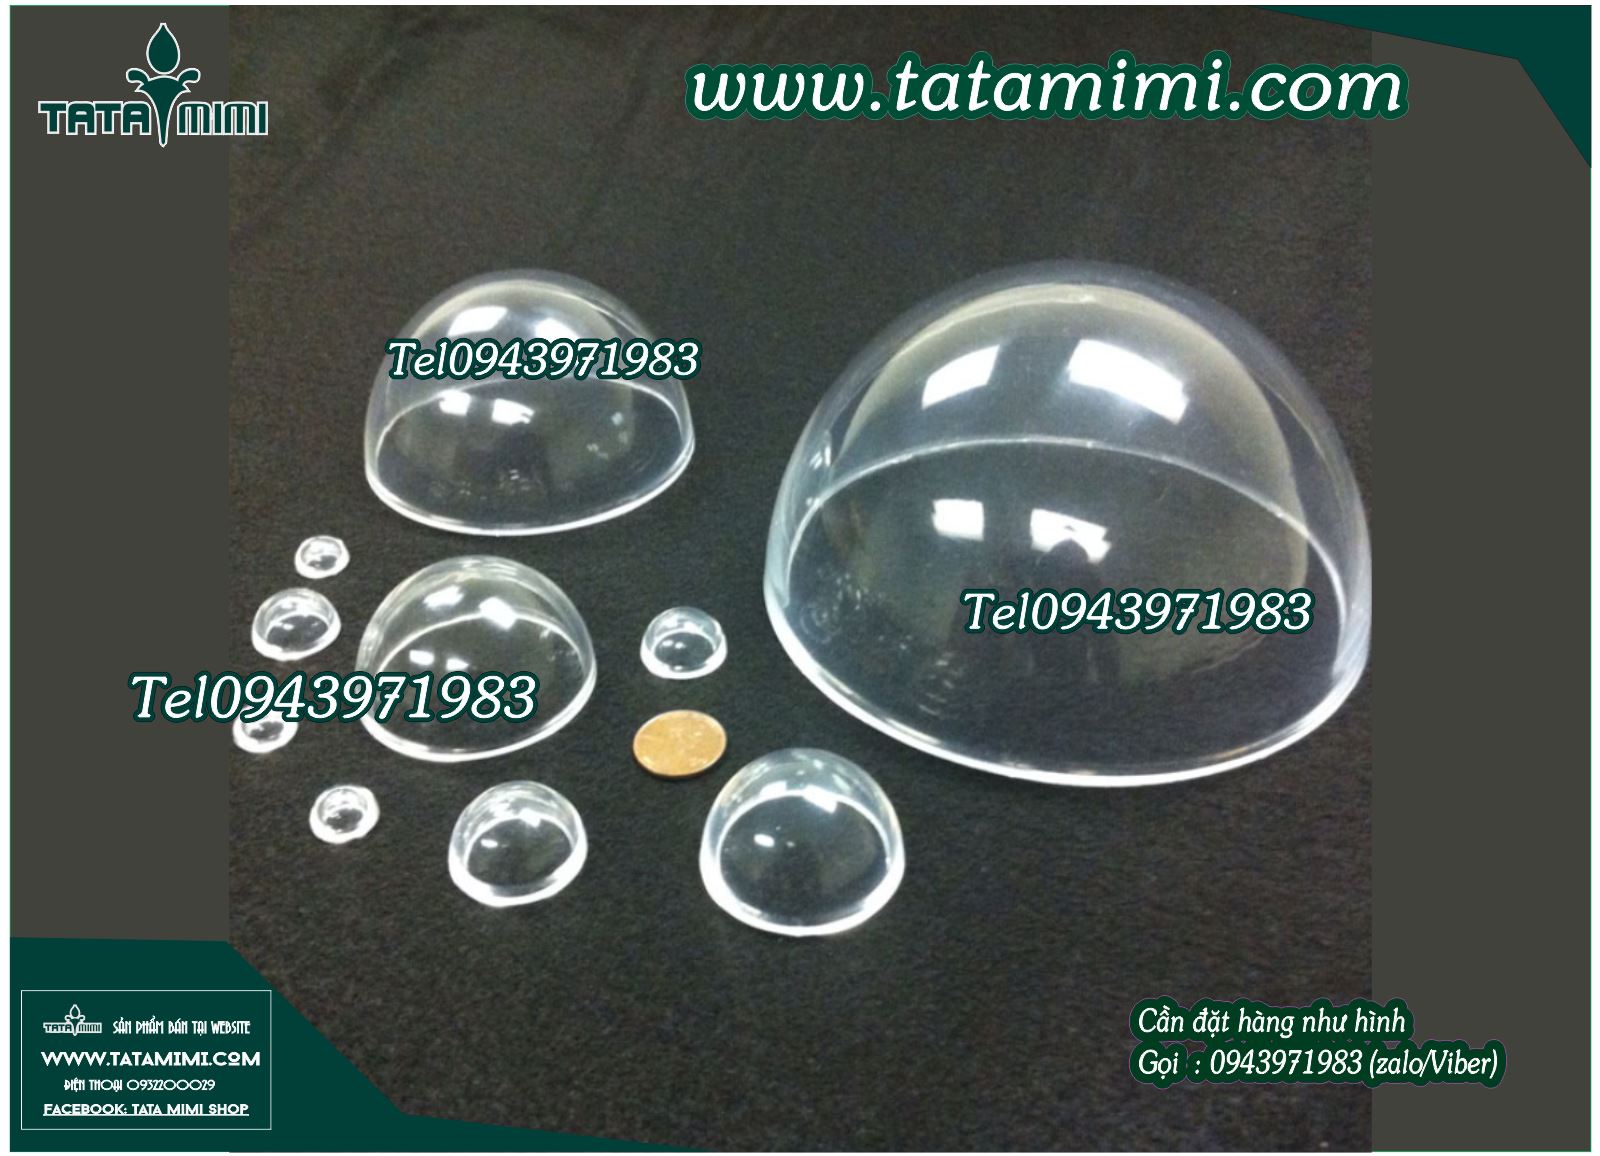 Đường kính mica hút nổi bán cầu acrylic trong suốt cao | TATA MIMI